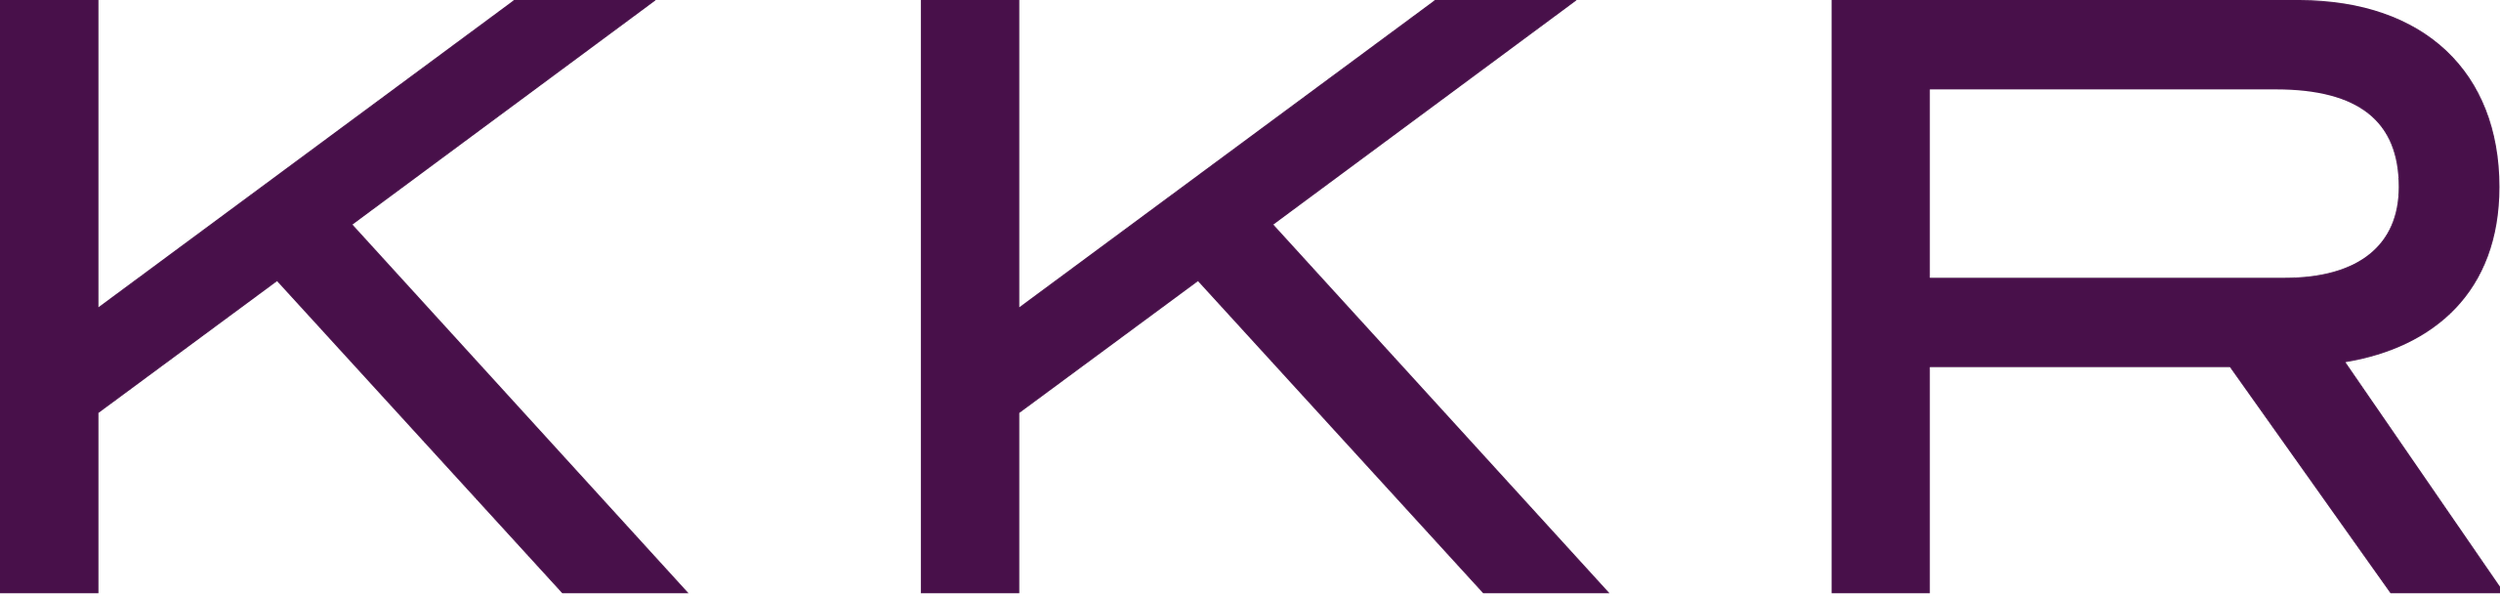 2560px-Kohlberg_Kravis_Roberts_(logo).svg.png